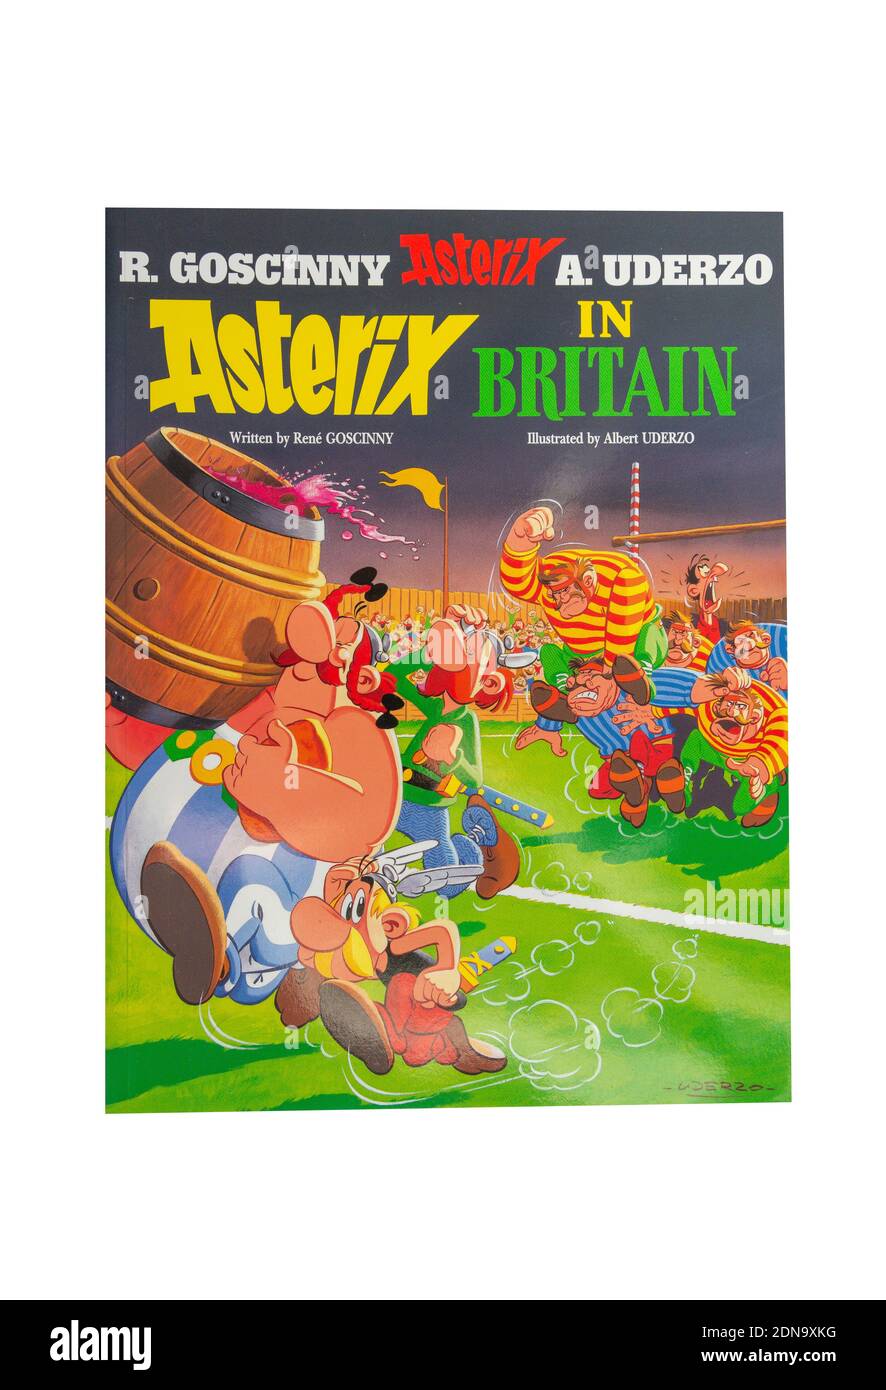 Il libro "Asterix in Britain" di Rene Goscinny, Greater London, England, United Kingdom Foto Stock